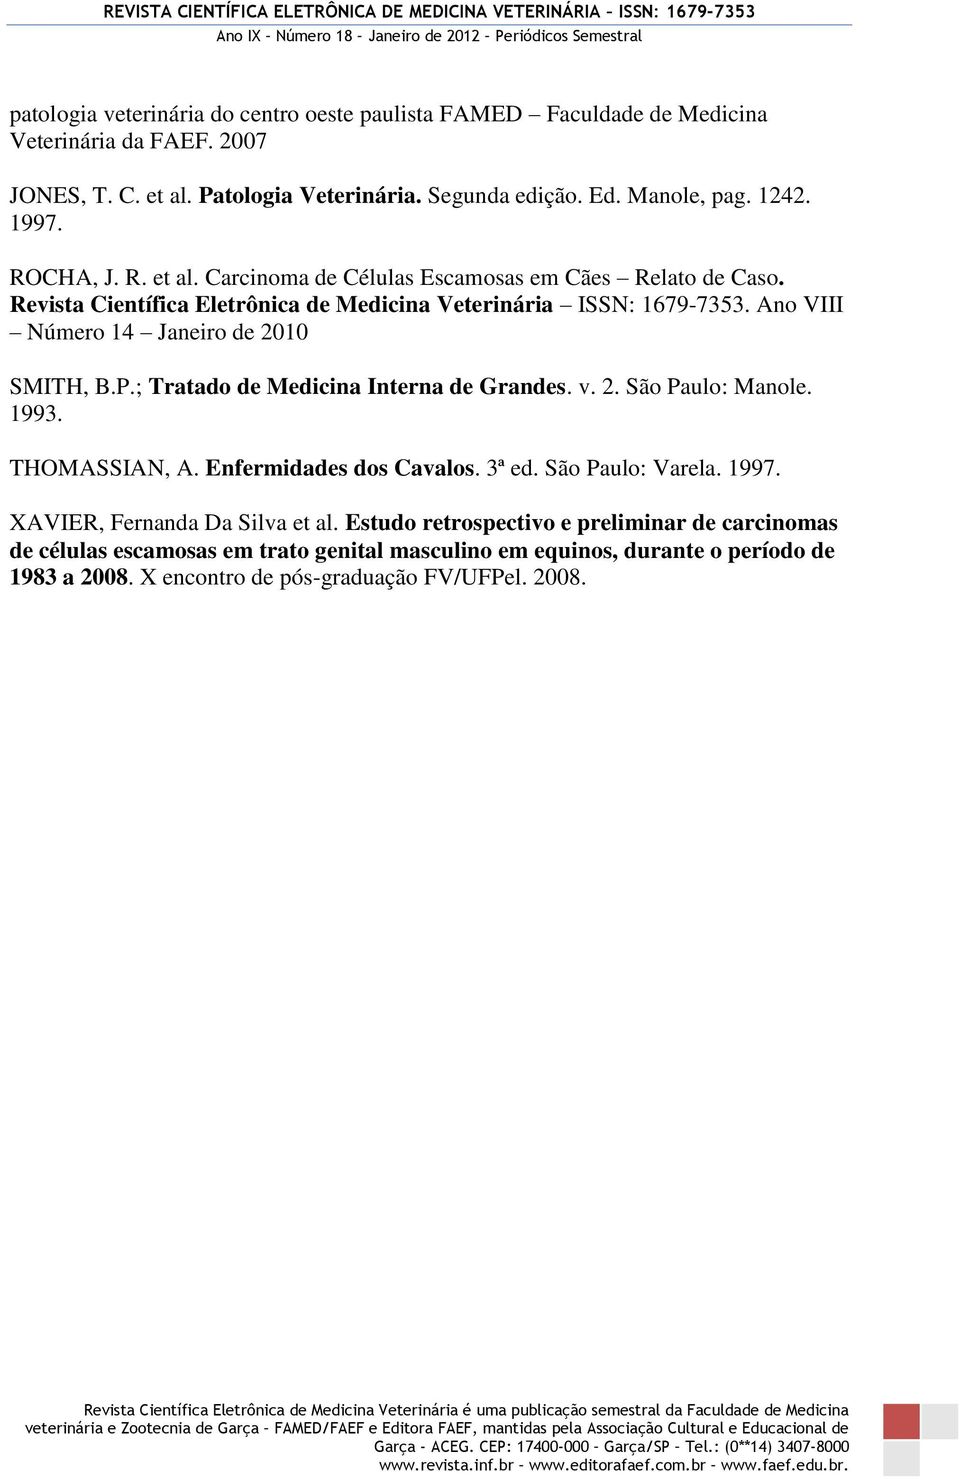 Ano VIII Número 14 Janeiro de 2010 SMITH, B.P.; Tratado de Medicina Interna de Grandes. v. 2. São Paulo: Manole. 1993. THOMASSIAN, A. Enfermidades dos Cavalos. 3ª ed. São Paulo: Varela.